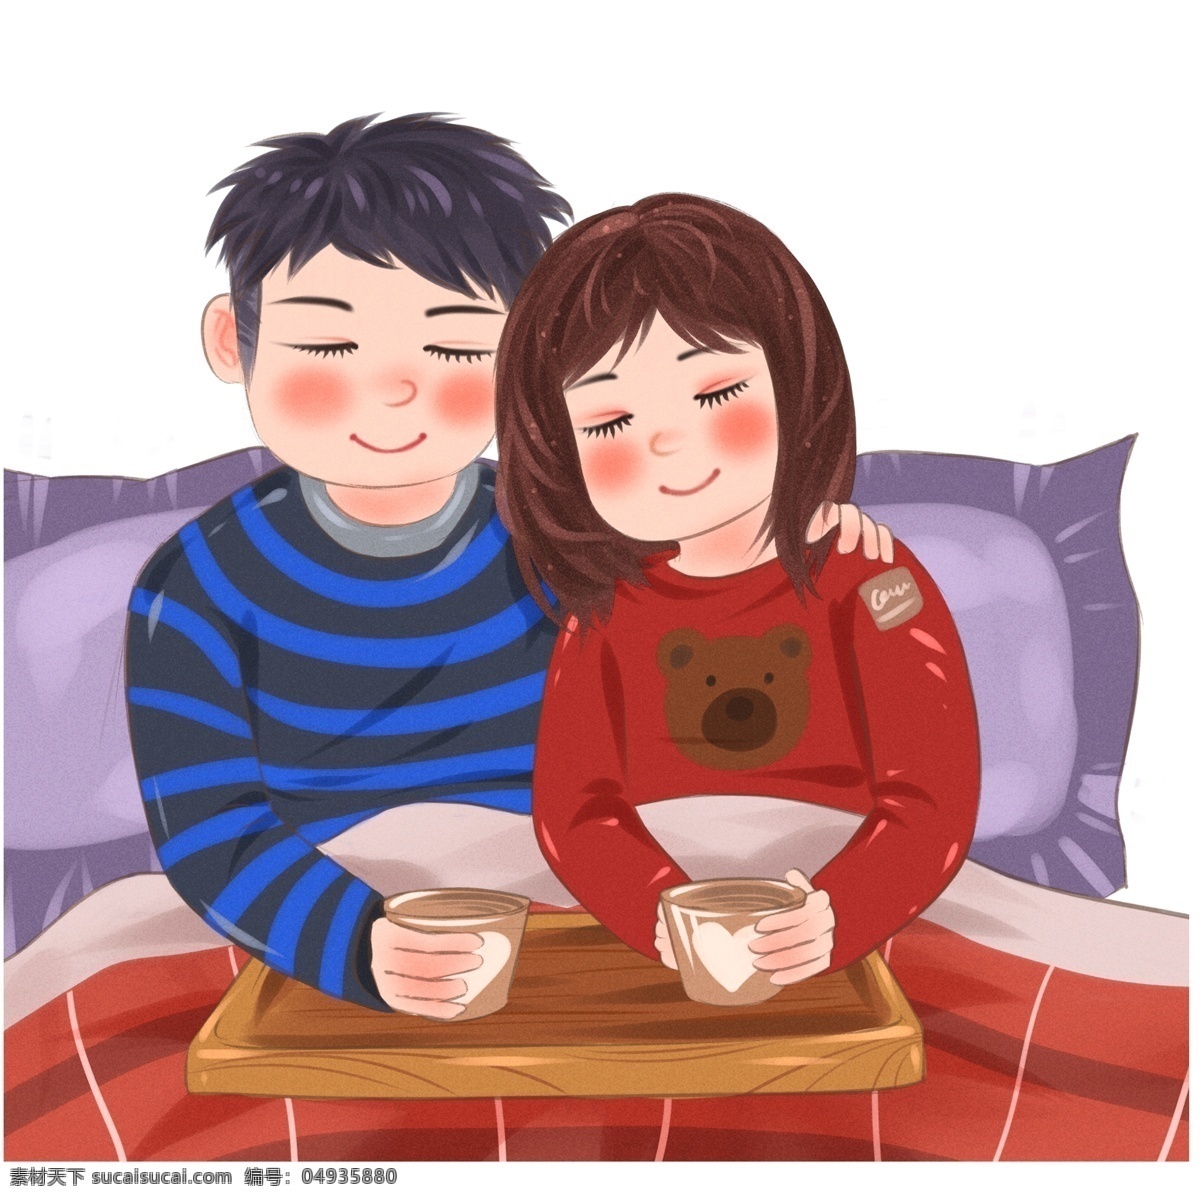 冬季 盖 被子 喝 热茶 小 夫妻 冬天 插画 枕头 情侣 手绘 盖被子 喝热茶 男生 女生